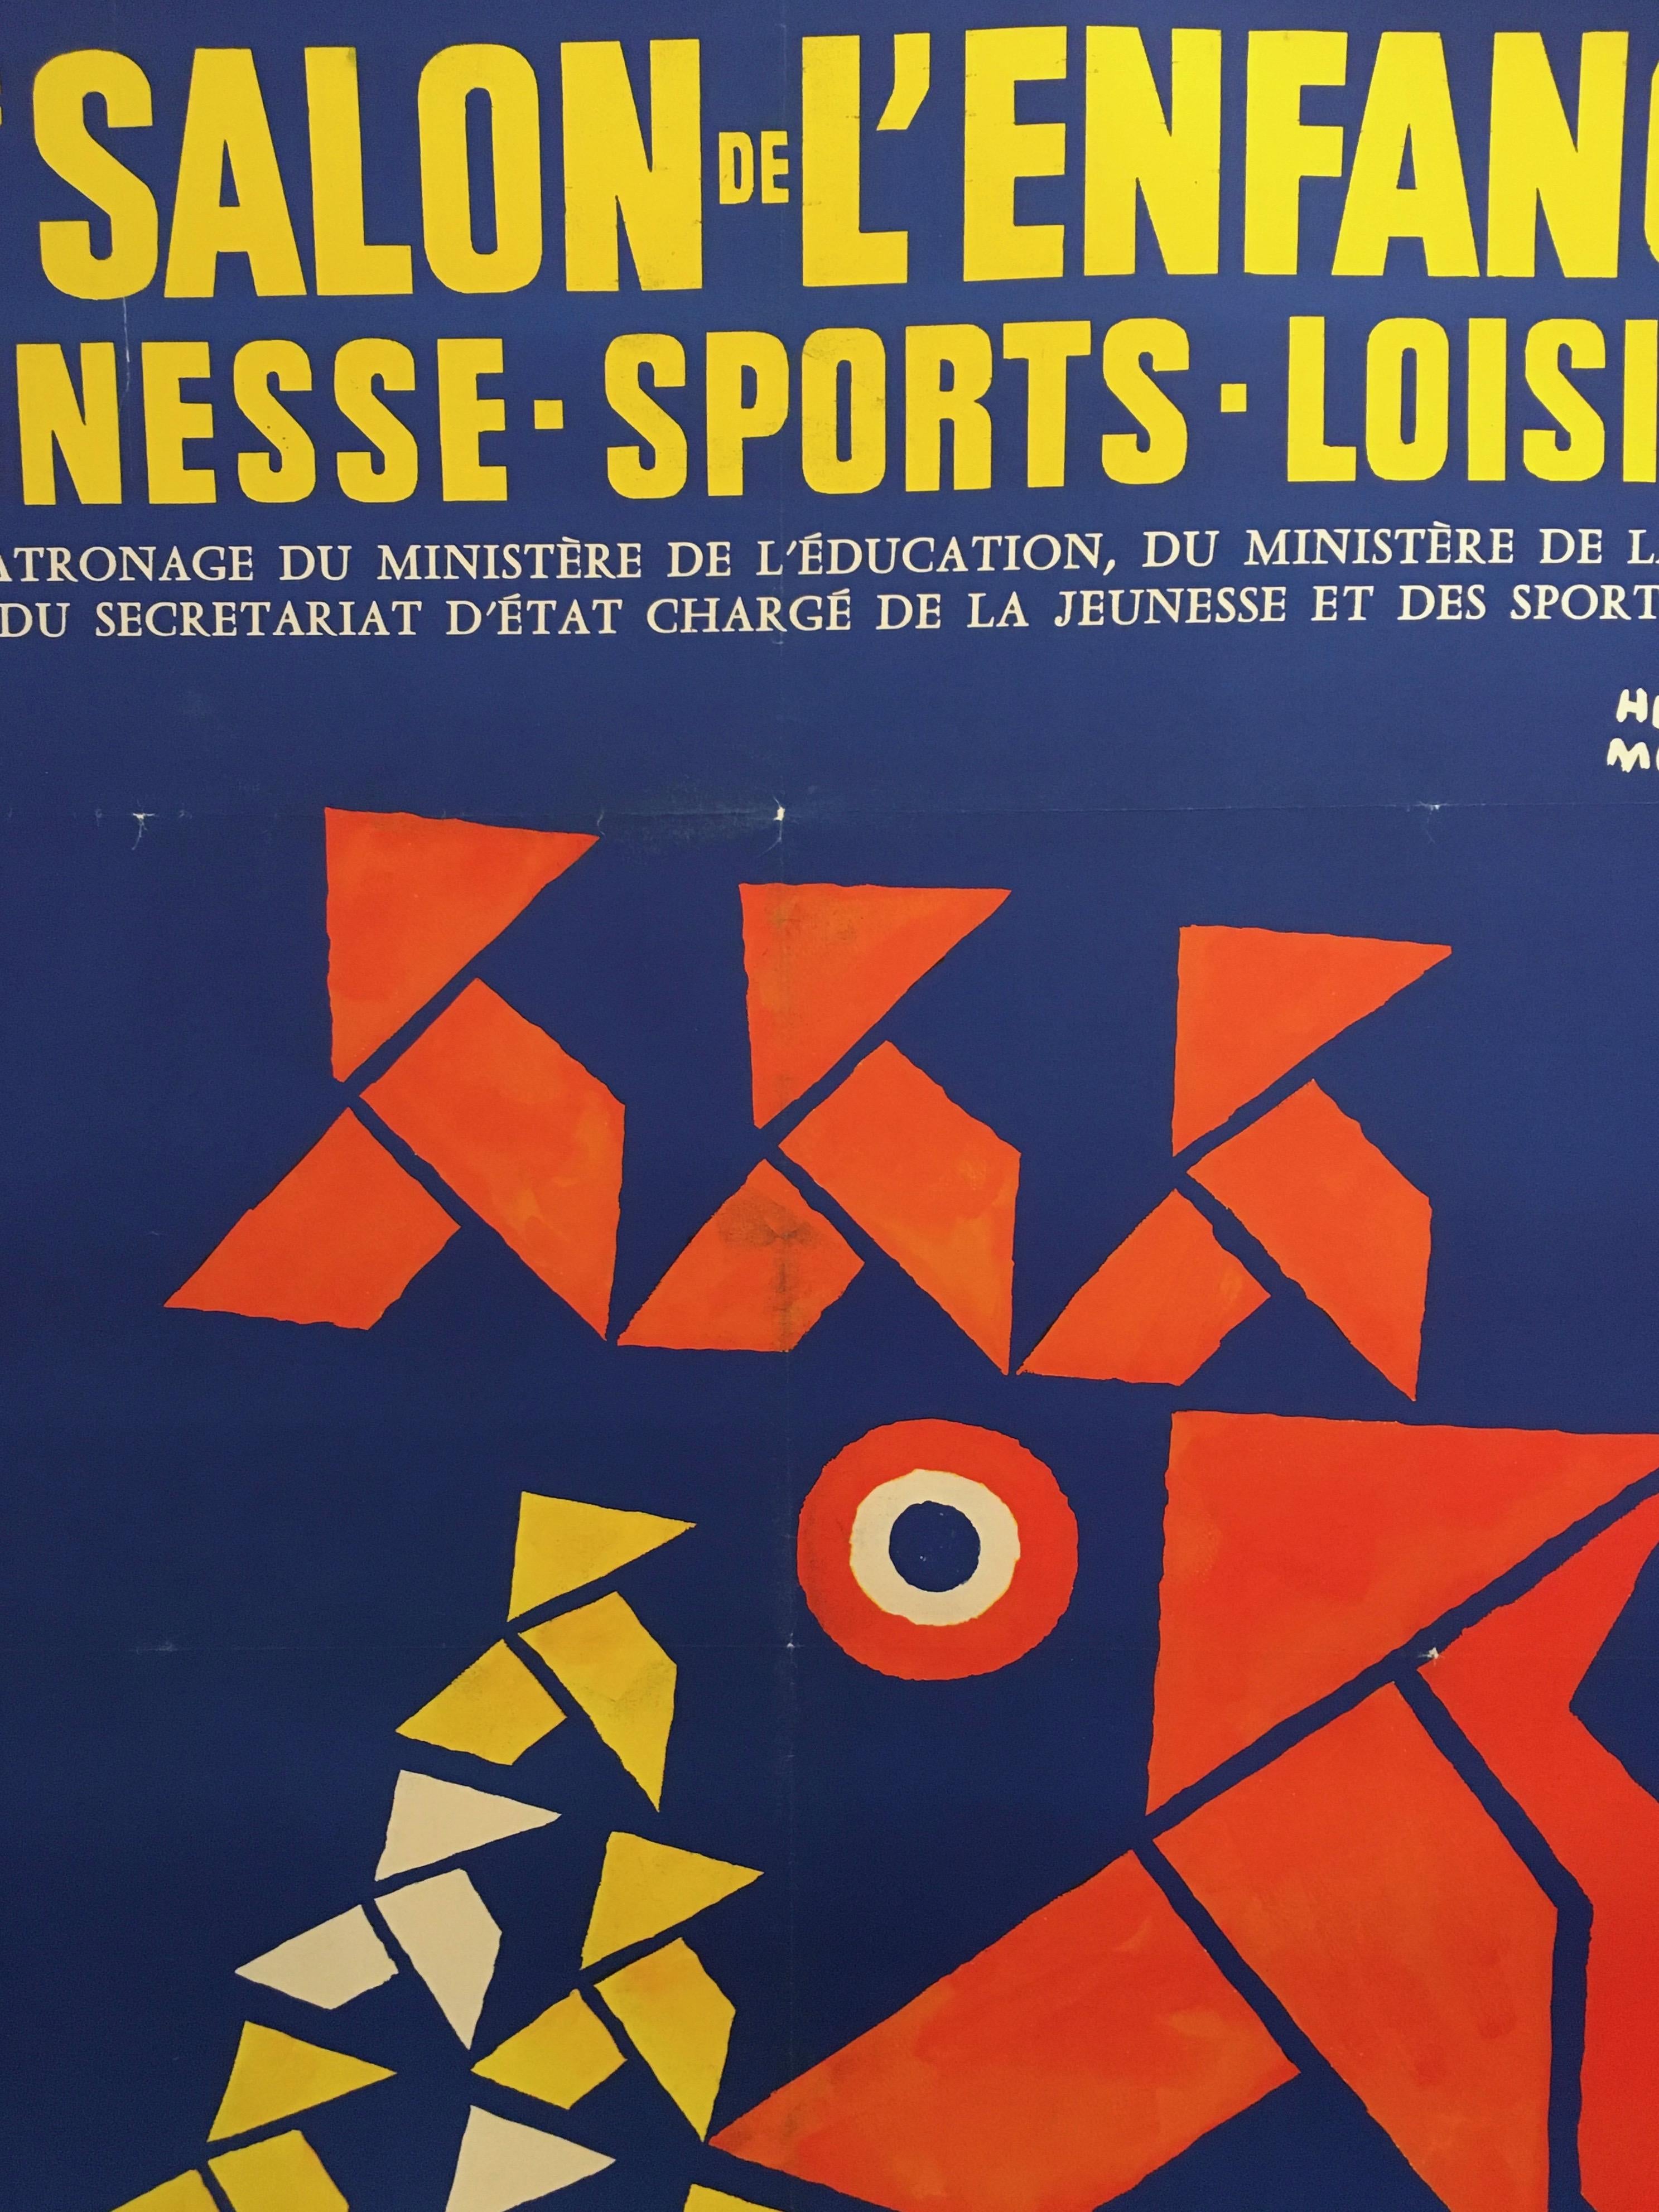 French Original Vintage Poster by Herve Morvan, 'Salon De L’enfance' Blue Rooster